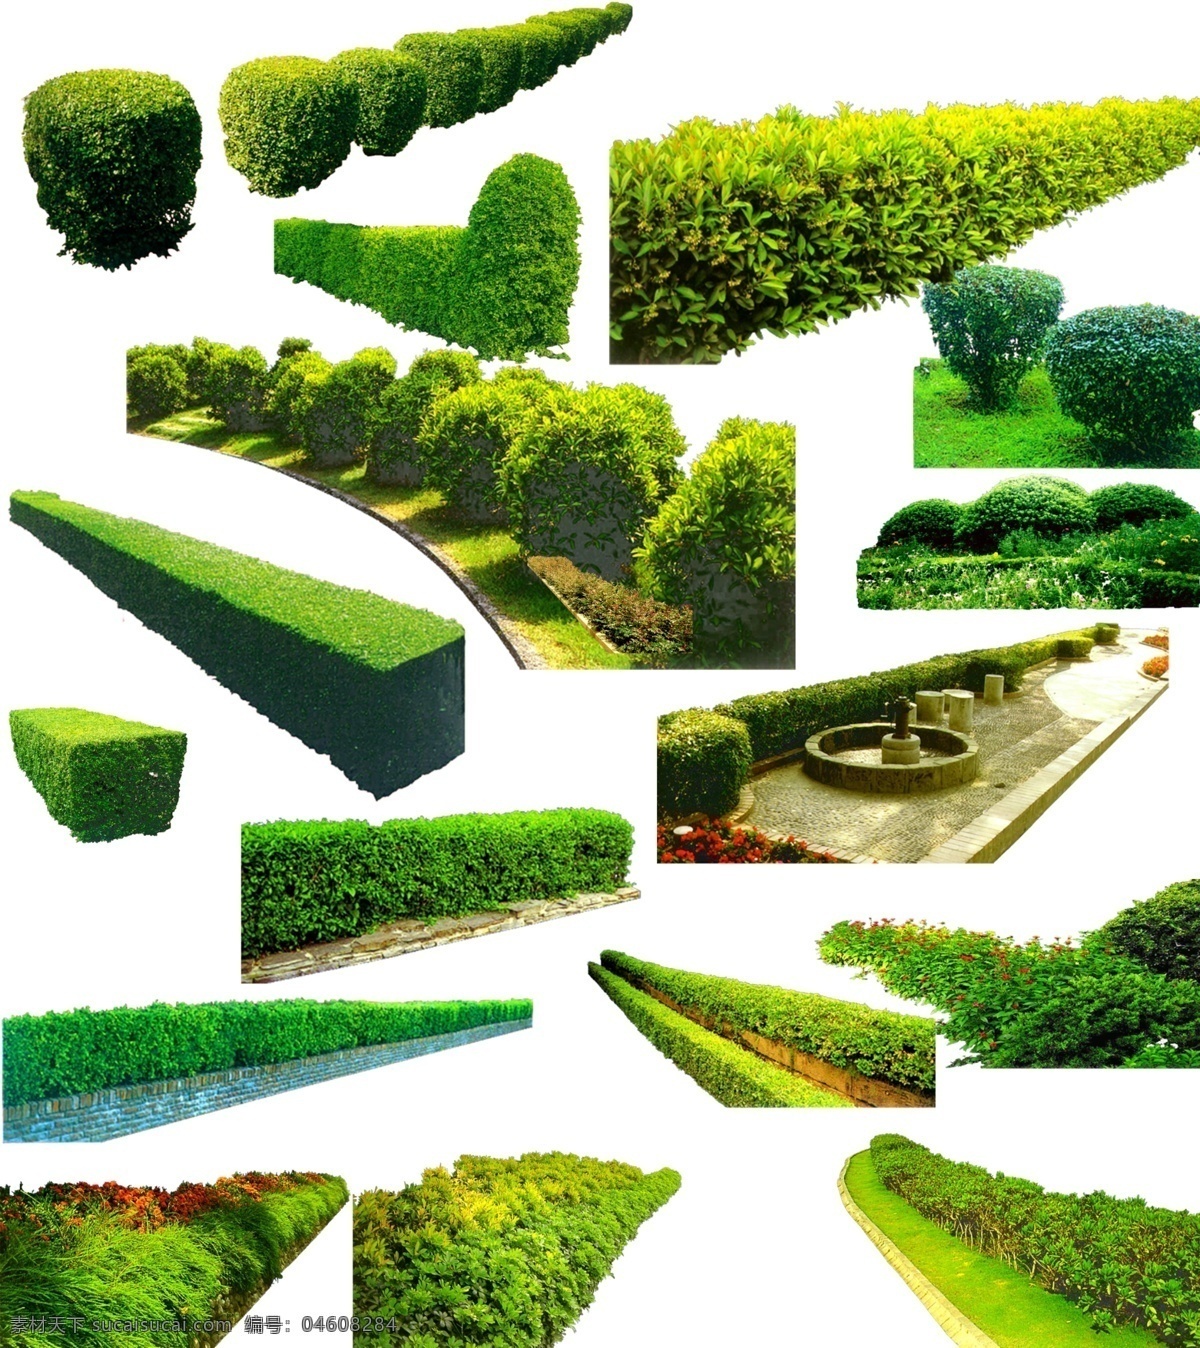 绿化带素材 绿化 绿化素材 树 草 树素材 绿化树 绿化带 道路绿化 道路绿化素材 行道绿化 素材共享 自然景观 建筑园林